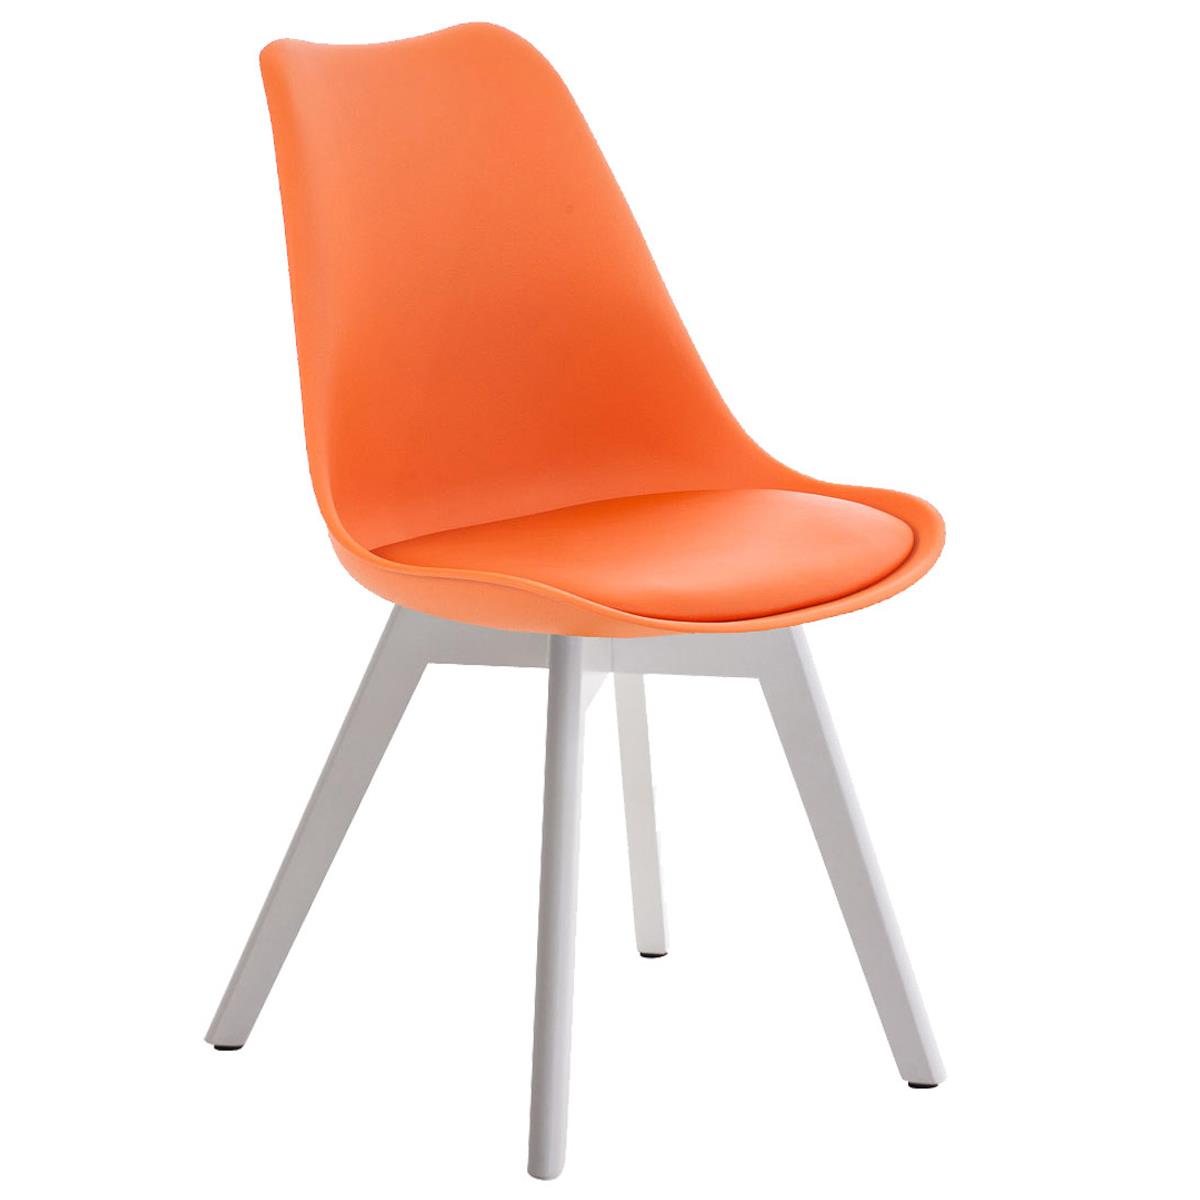 Designer-Besucherstuhl BOSPORUS, weiße Holzstuhlbeine, Sitzbezug aus Kunstleder, Gestell mit Stoffbezug, Farbe Orange